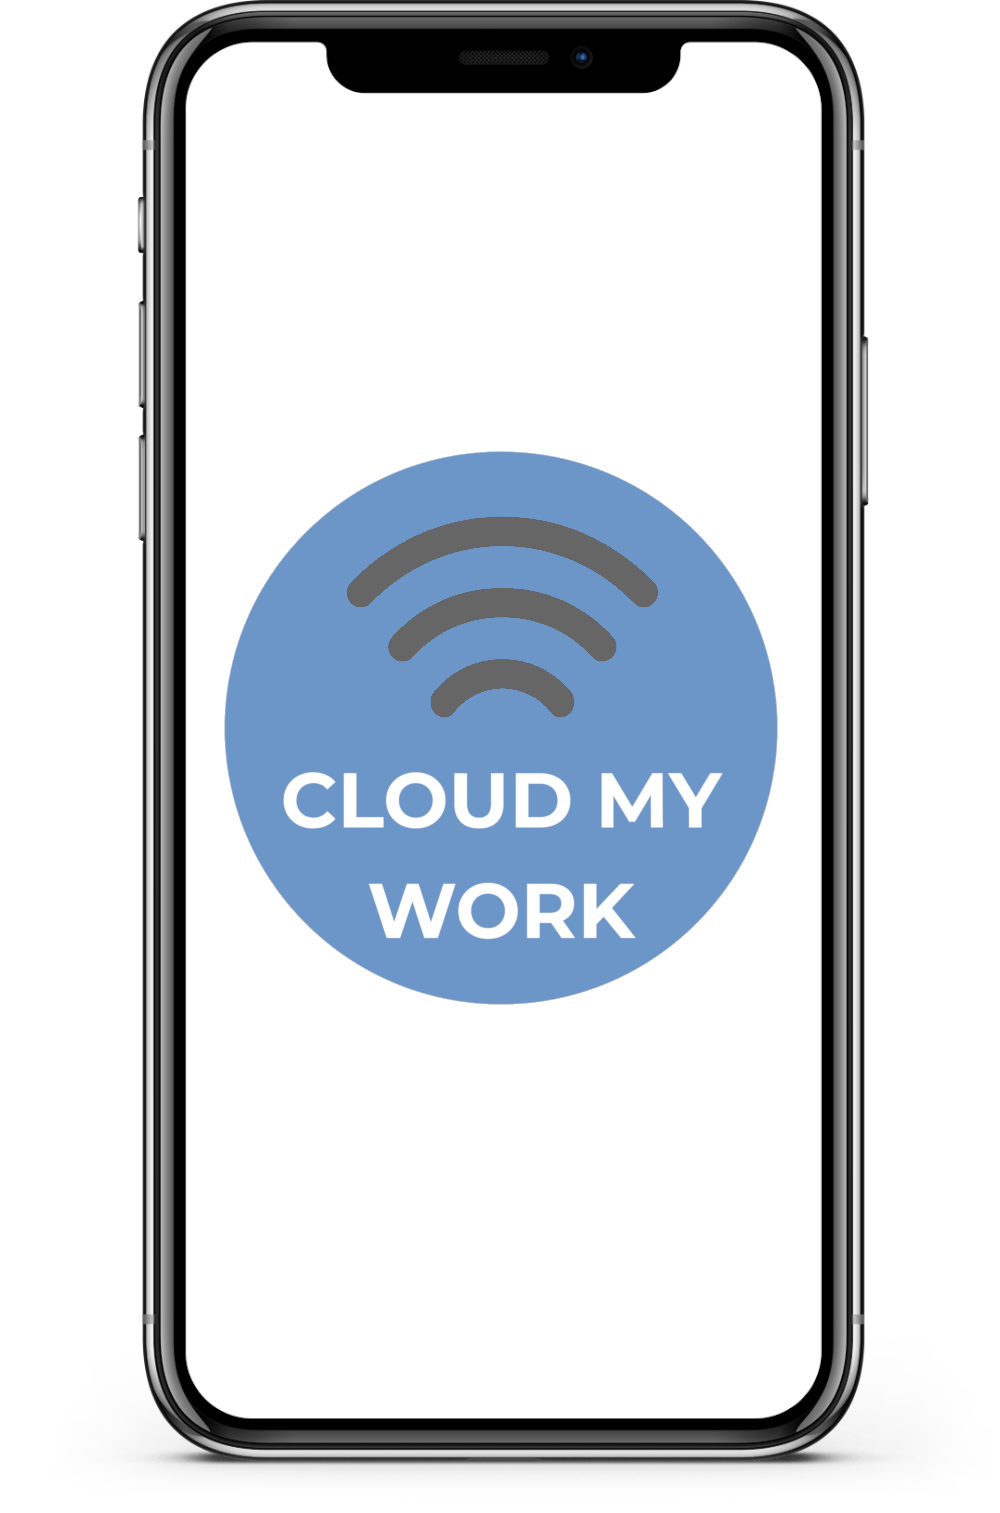 Applicación de Cloud My Work